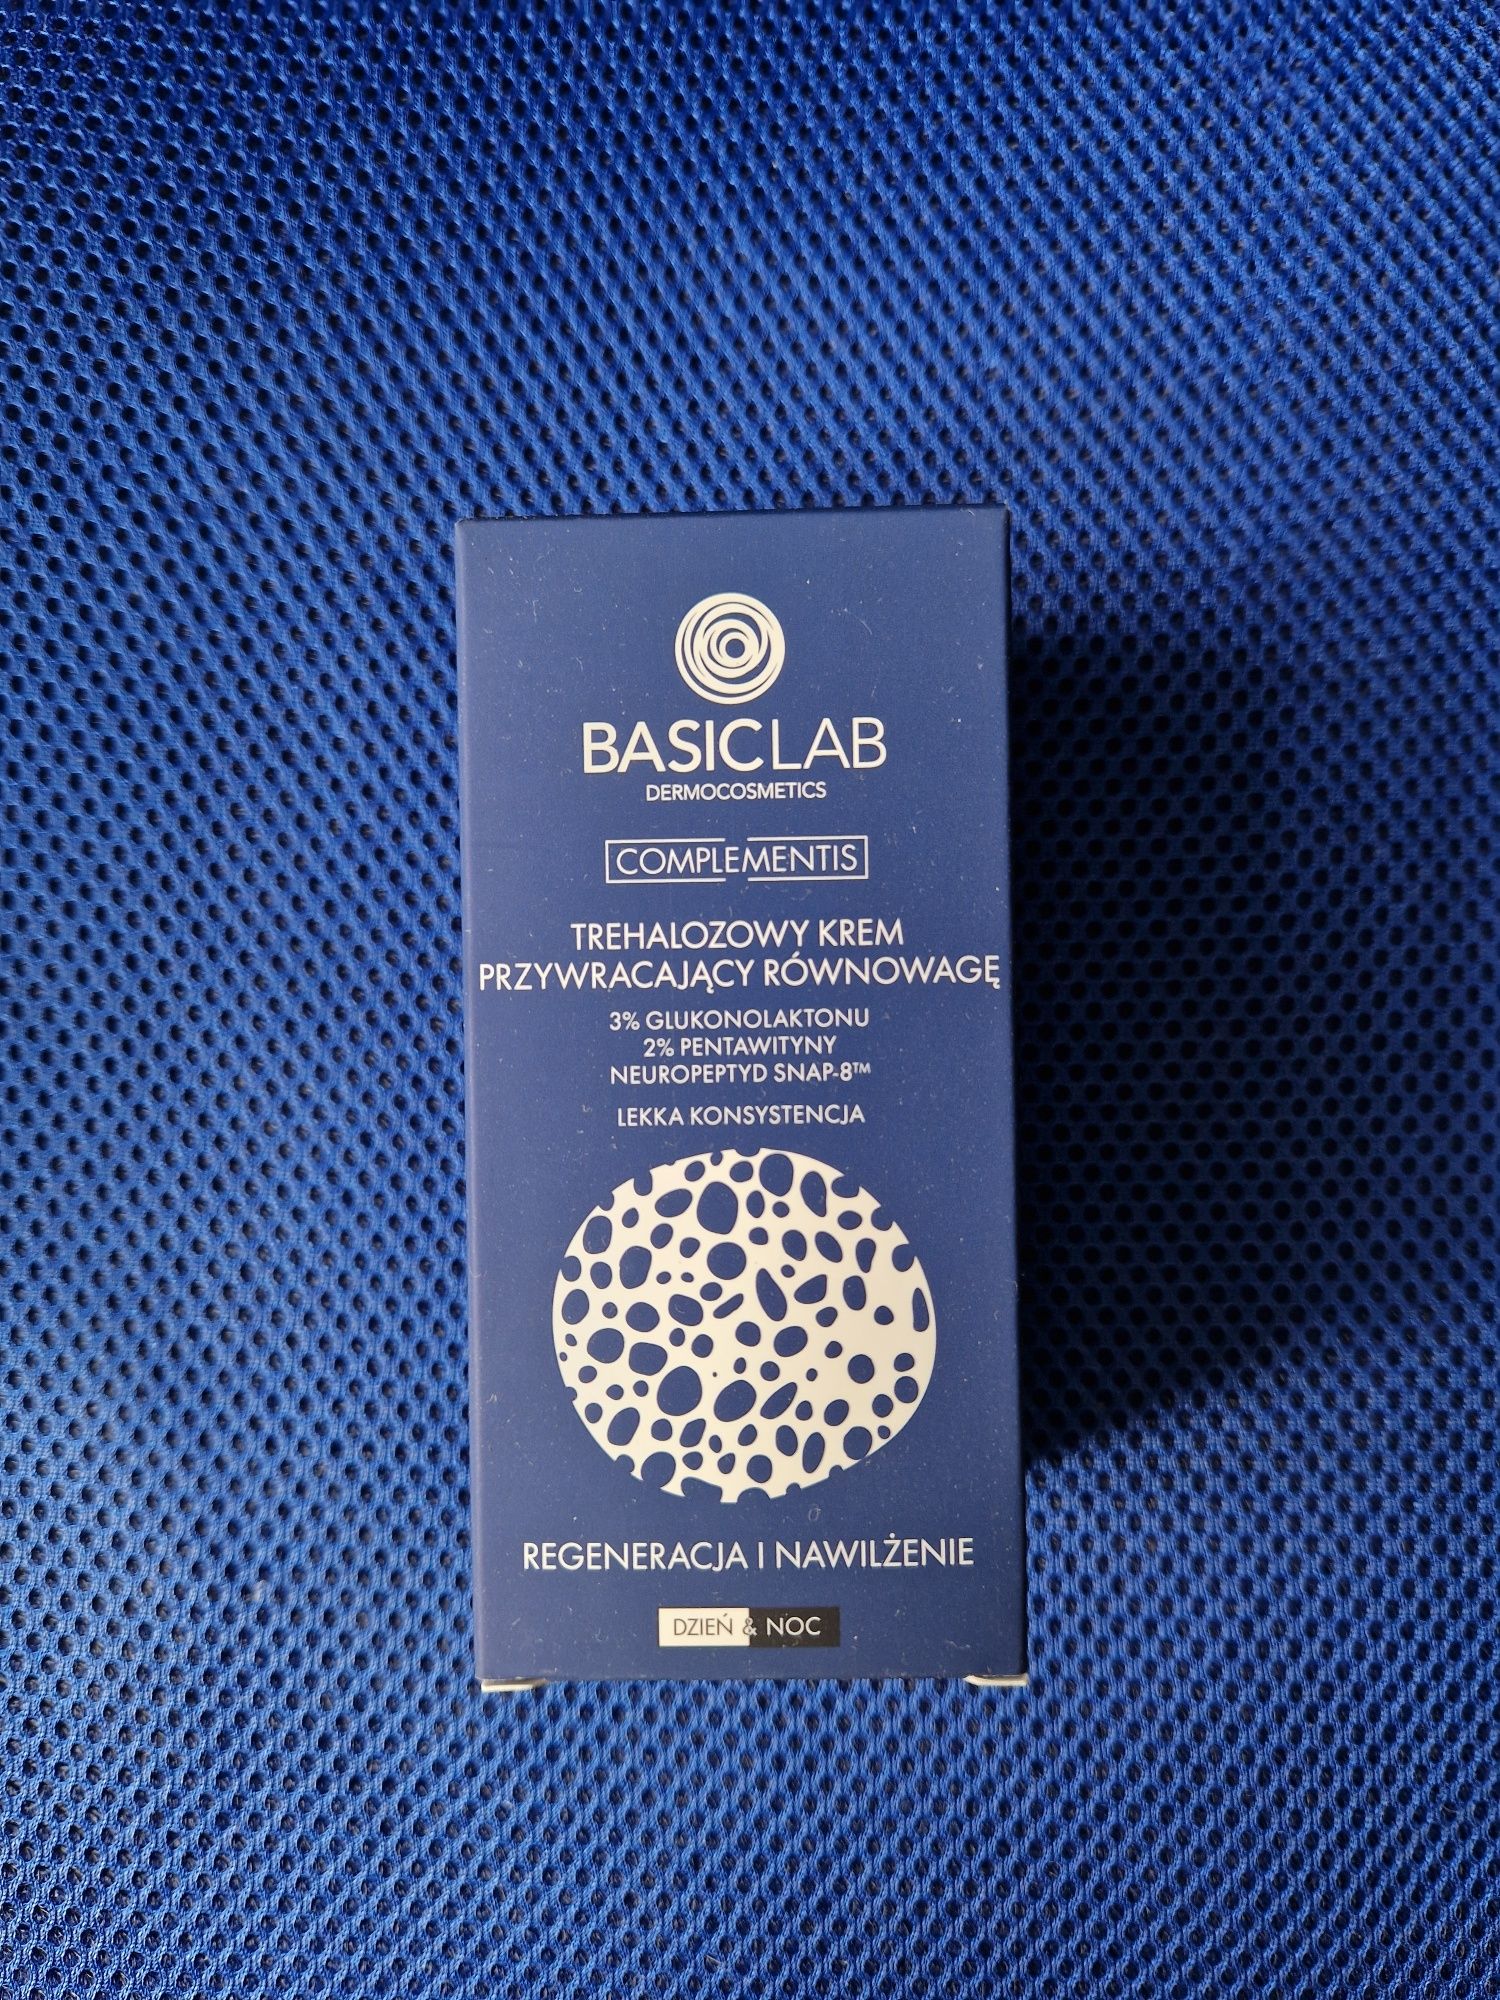 BasicLab trehalozowy krem przywracający równowagę lekka konsystencja